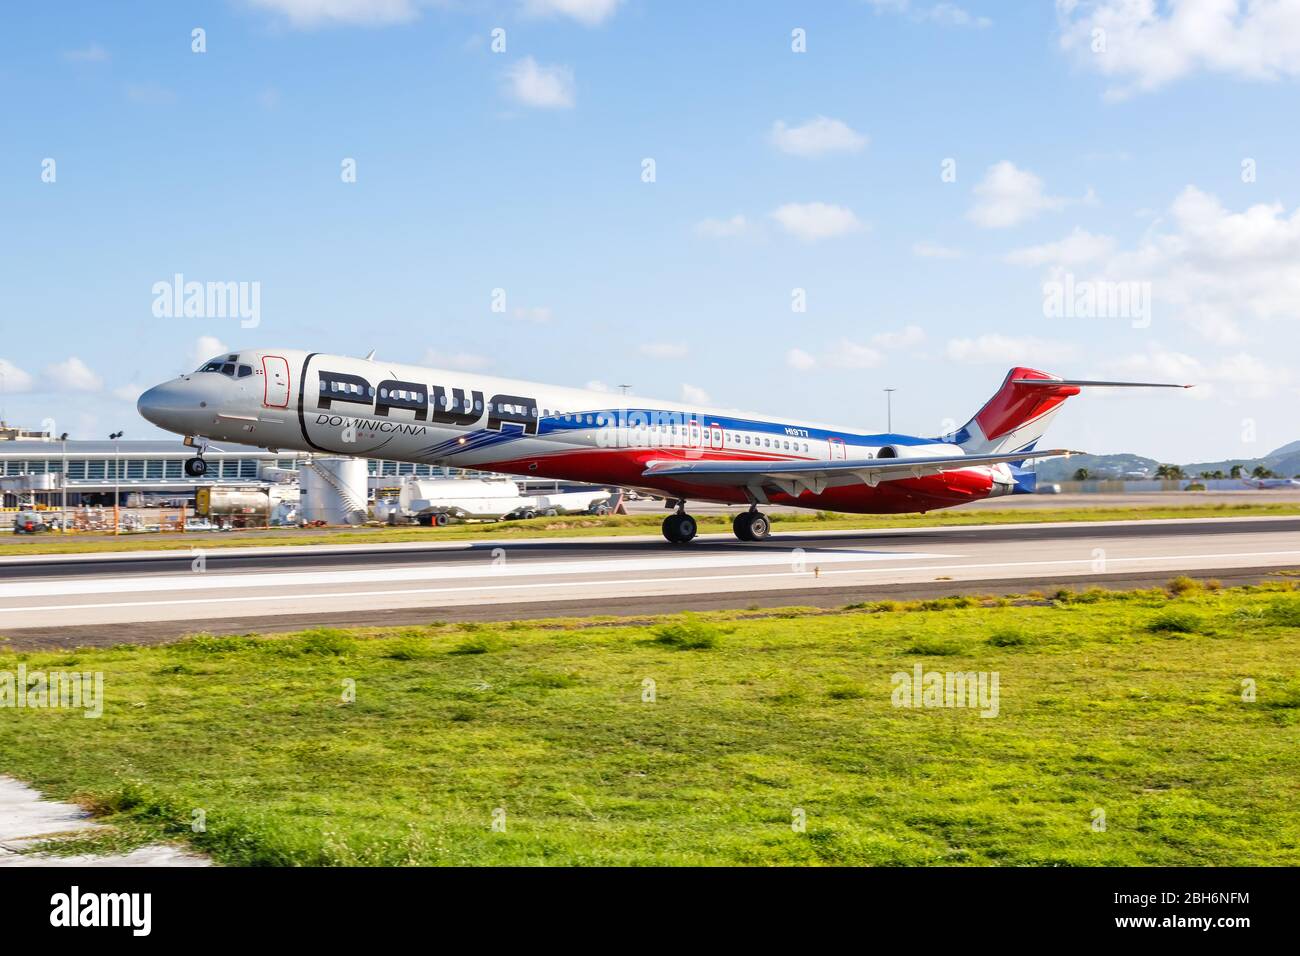 Sint Maarten – 16 septembre 2016 : avion PAWA Dominicana McDonnell Douglas MD-83 à l'aéroport Sint Maarten (SXM) à Sint Maarten. Banque D'Images